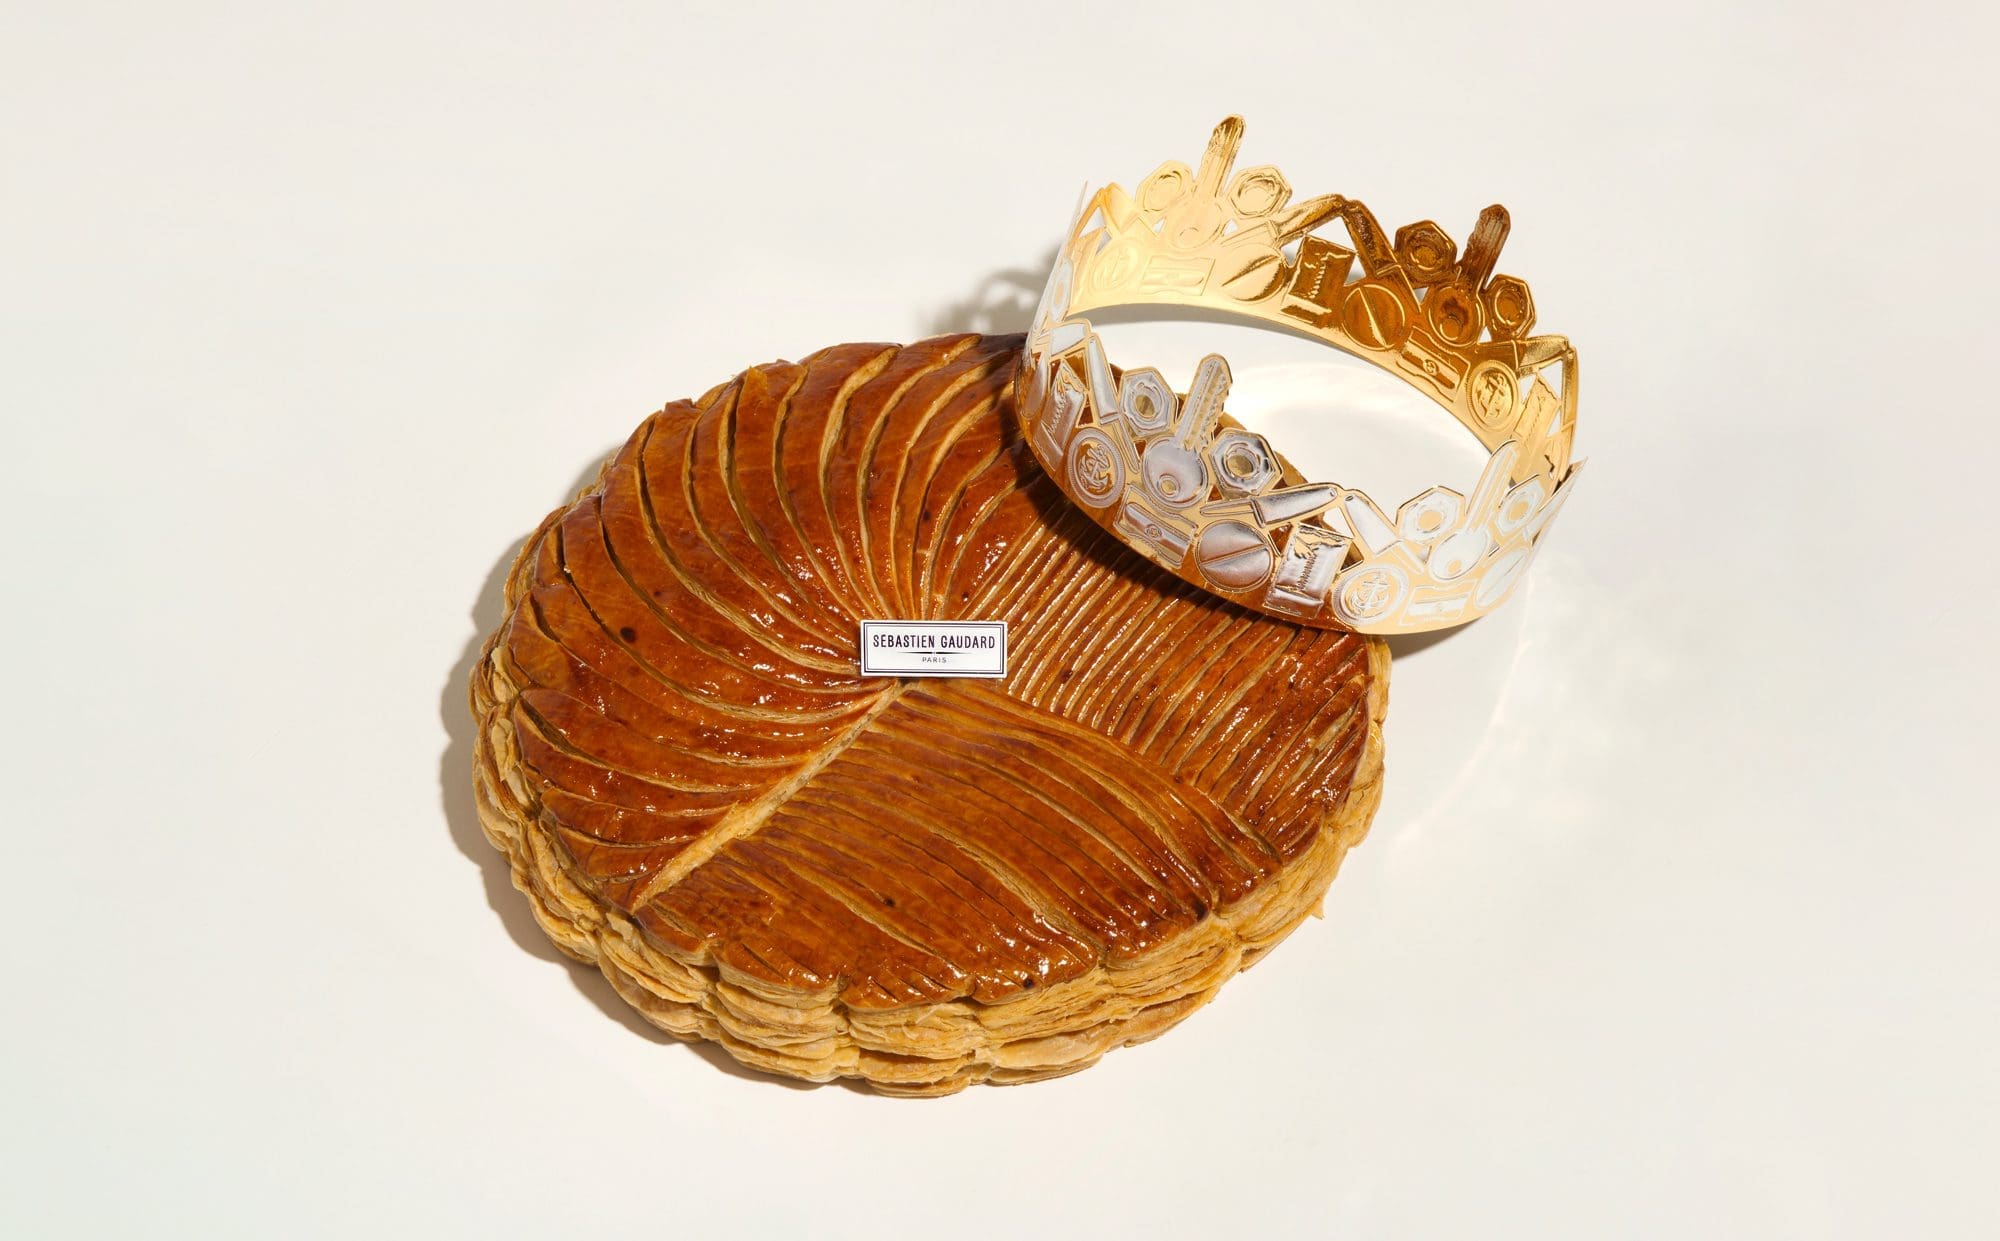 La galette des rois Sebastien Gaudard, design de la couronne par IchetKar